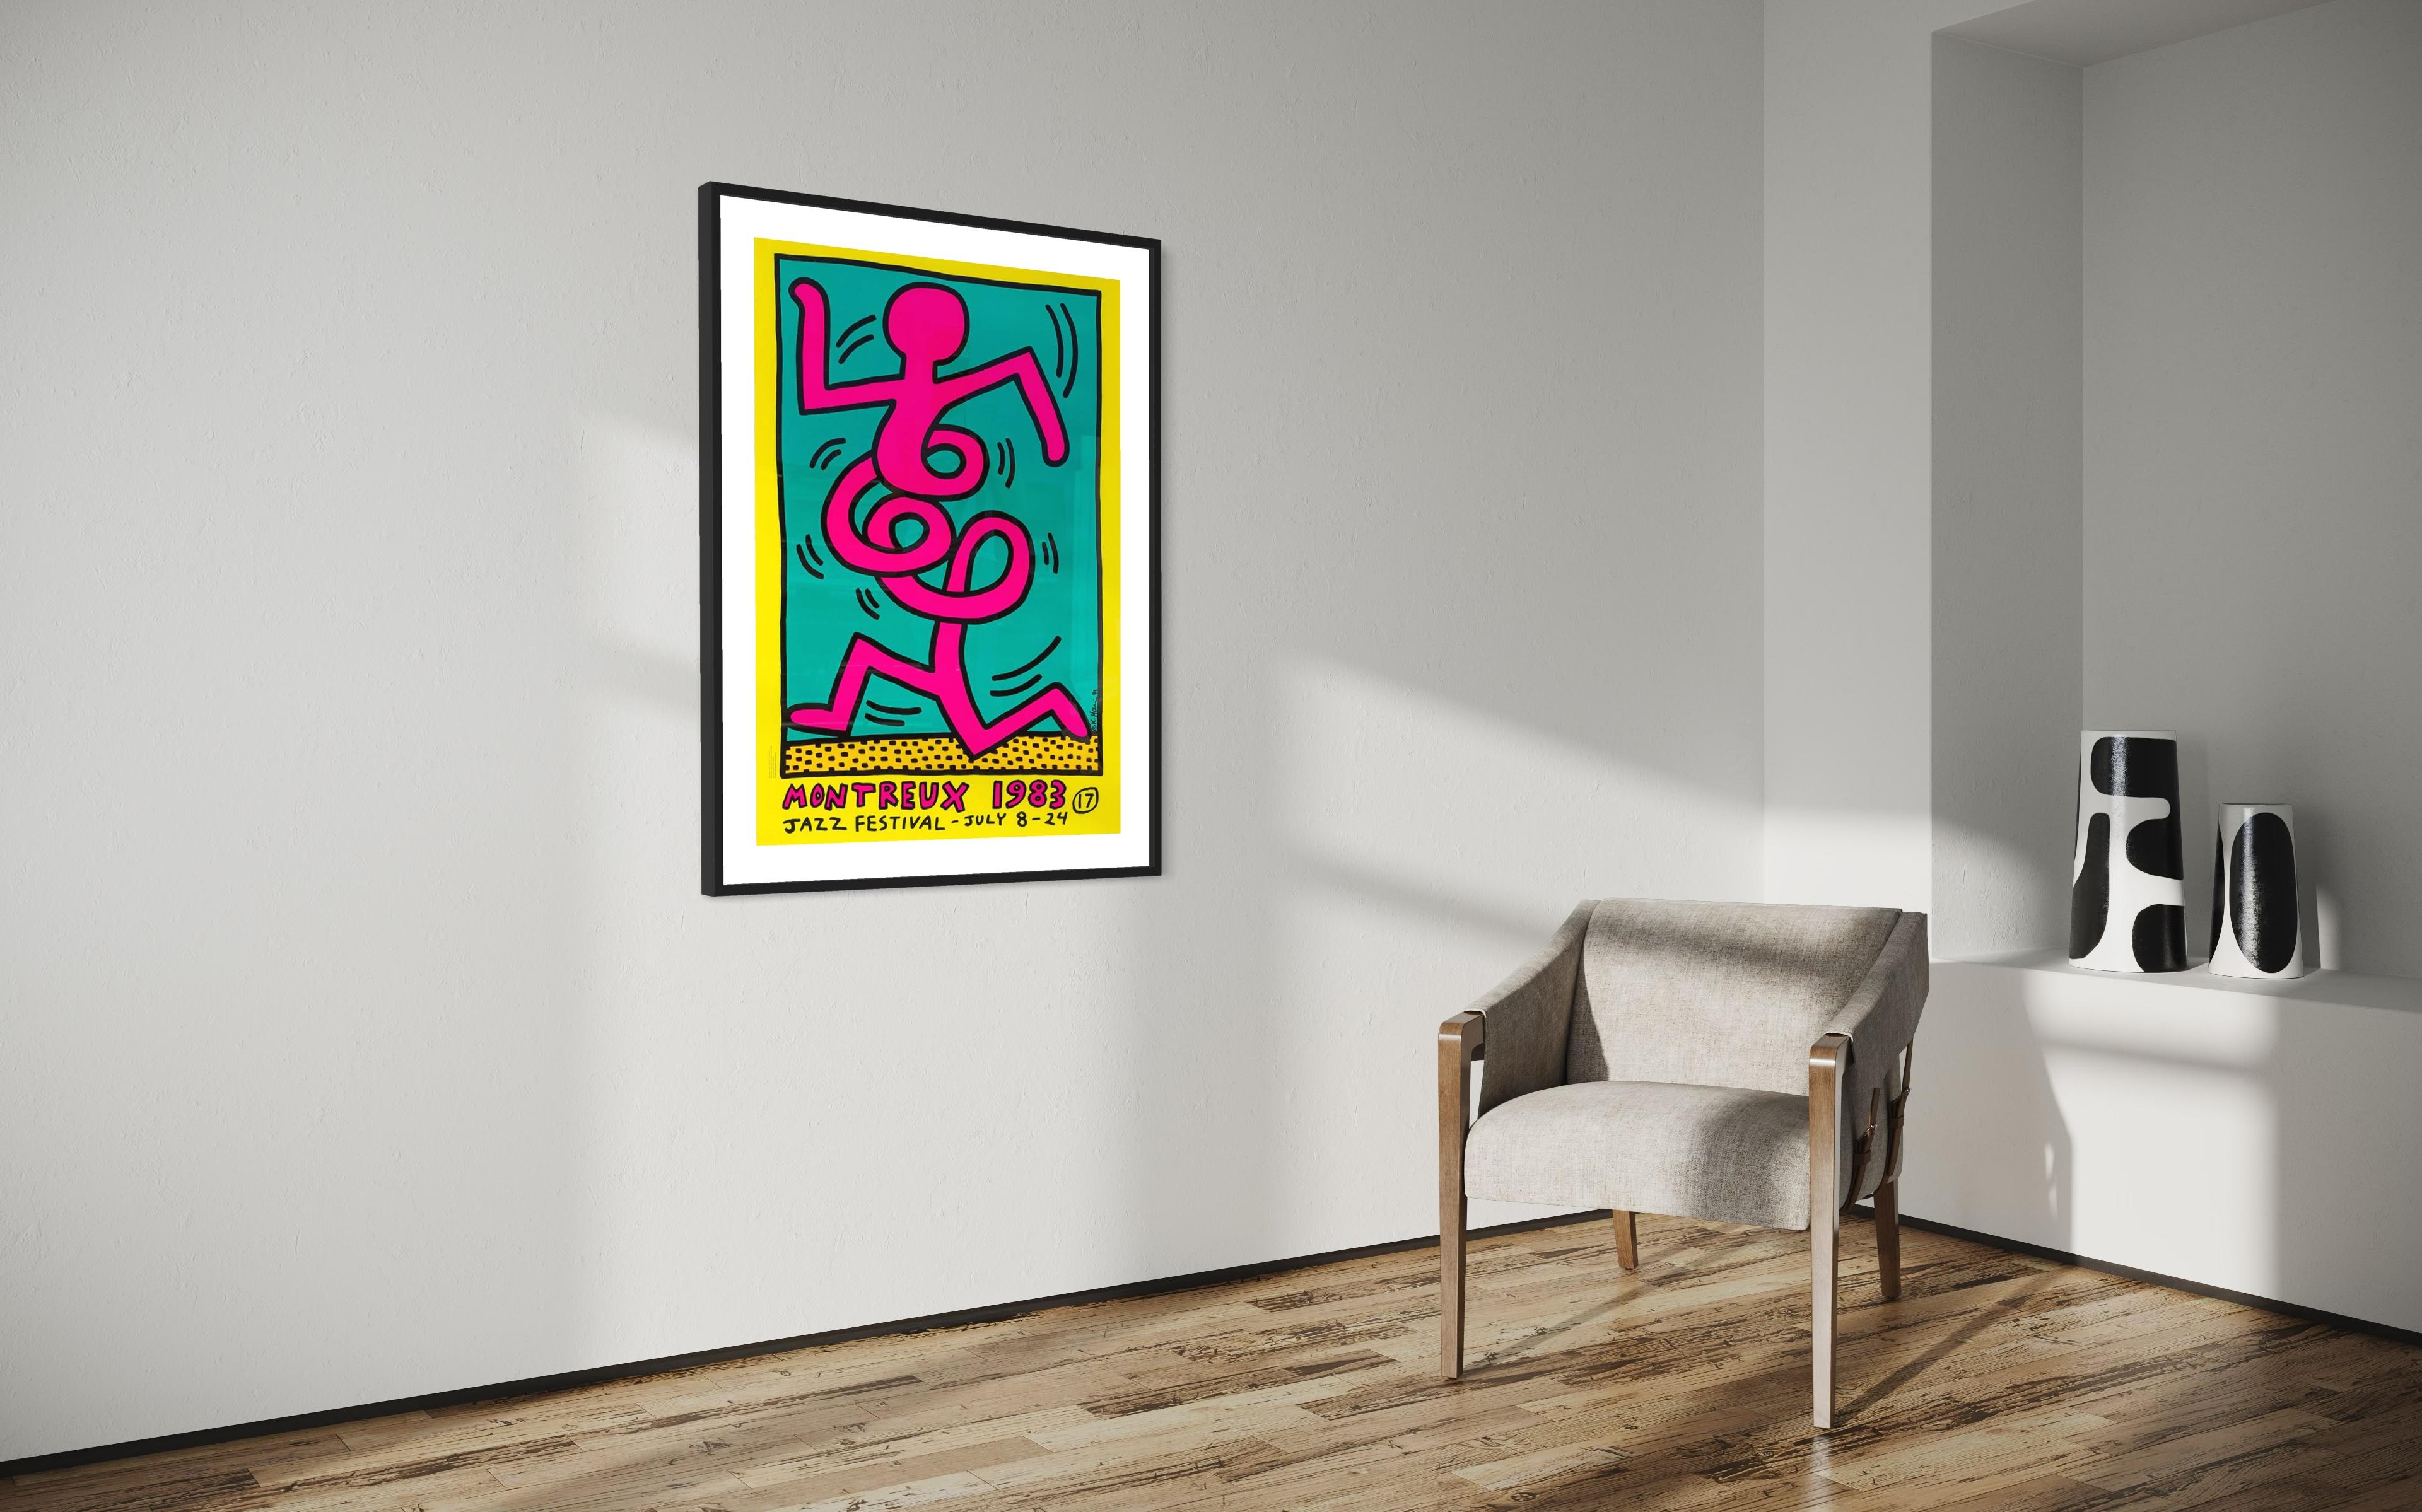 Titel: Montreux Jazz Festival 1983 von Keith Haring 1986

Medium: Farbsiebdruck auf halbmatt gestrichenem 250-Gramm-Papier

Drucker: Albin Uldry

Größe: 70 x 100 cm (27,6 x 39,4 Zoll)

Unterschrift: Platte signiert von Keith Haring 

Offene